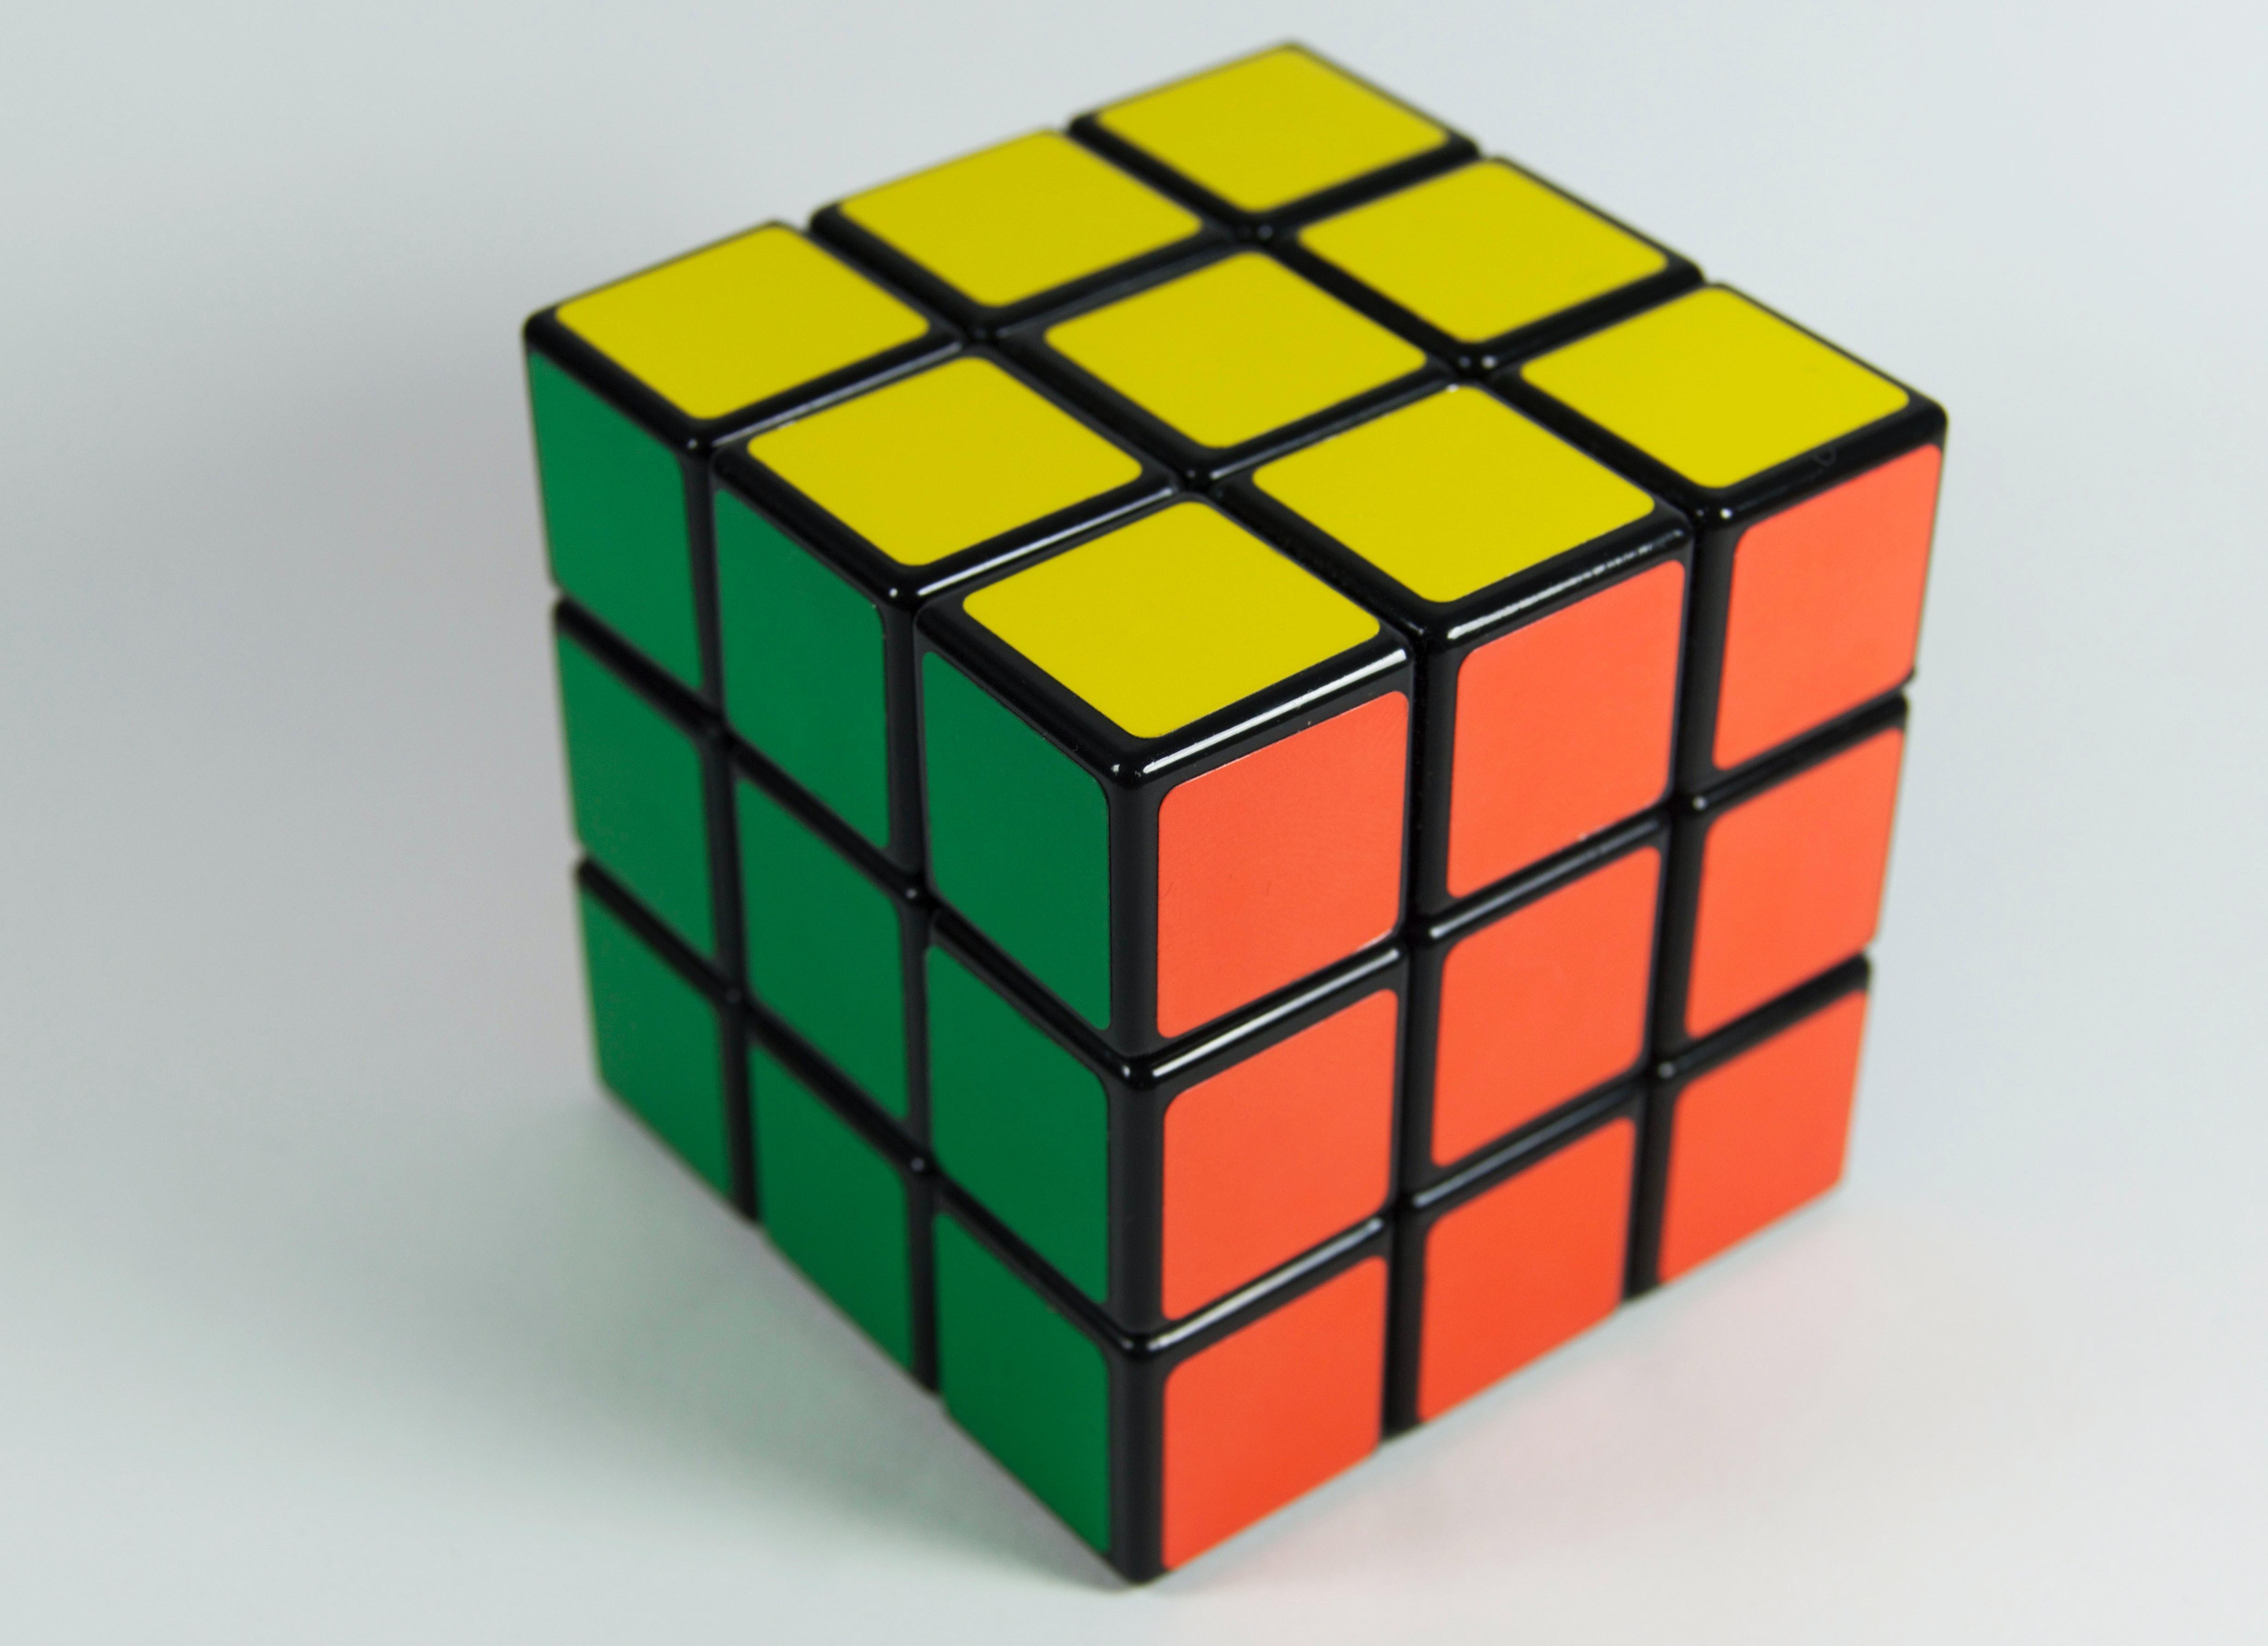 Rubik's Cube model for Multi-Table Data